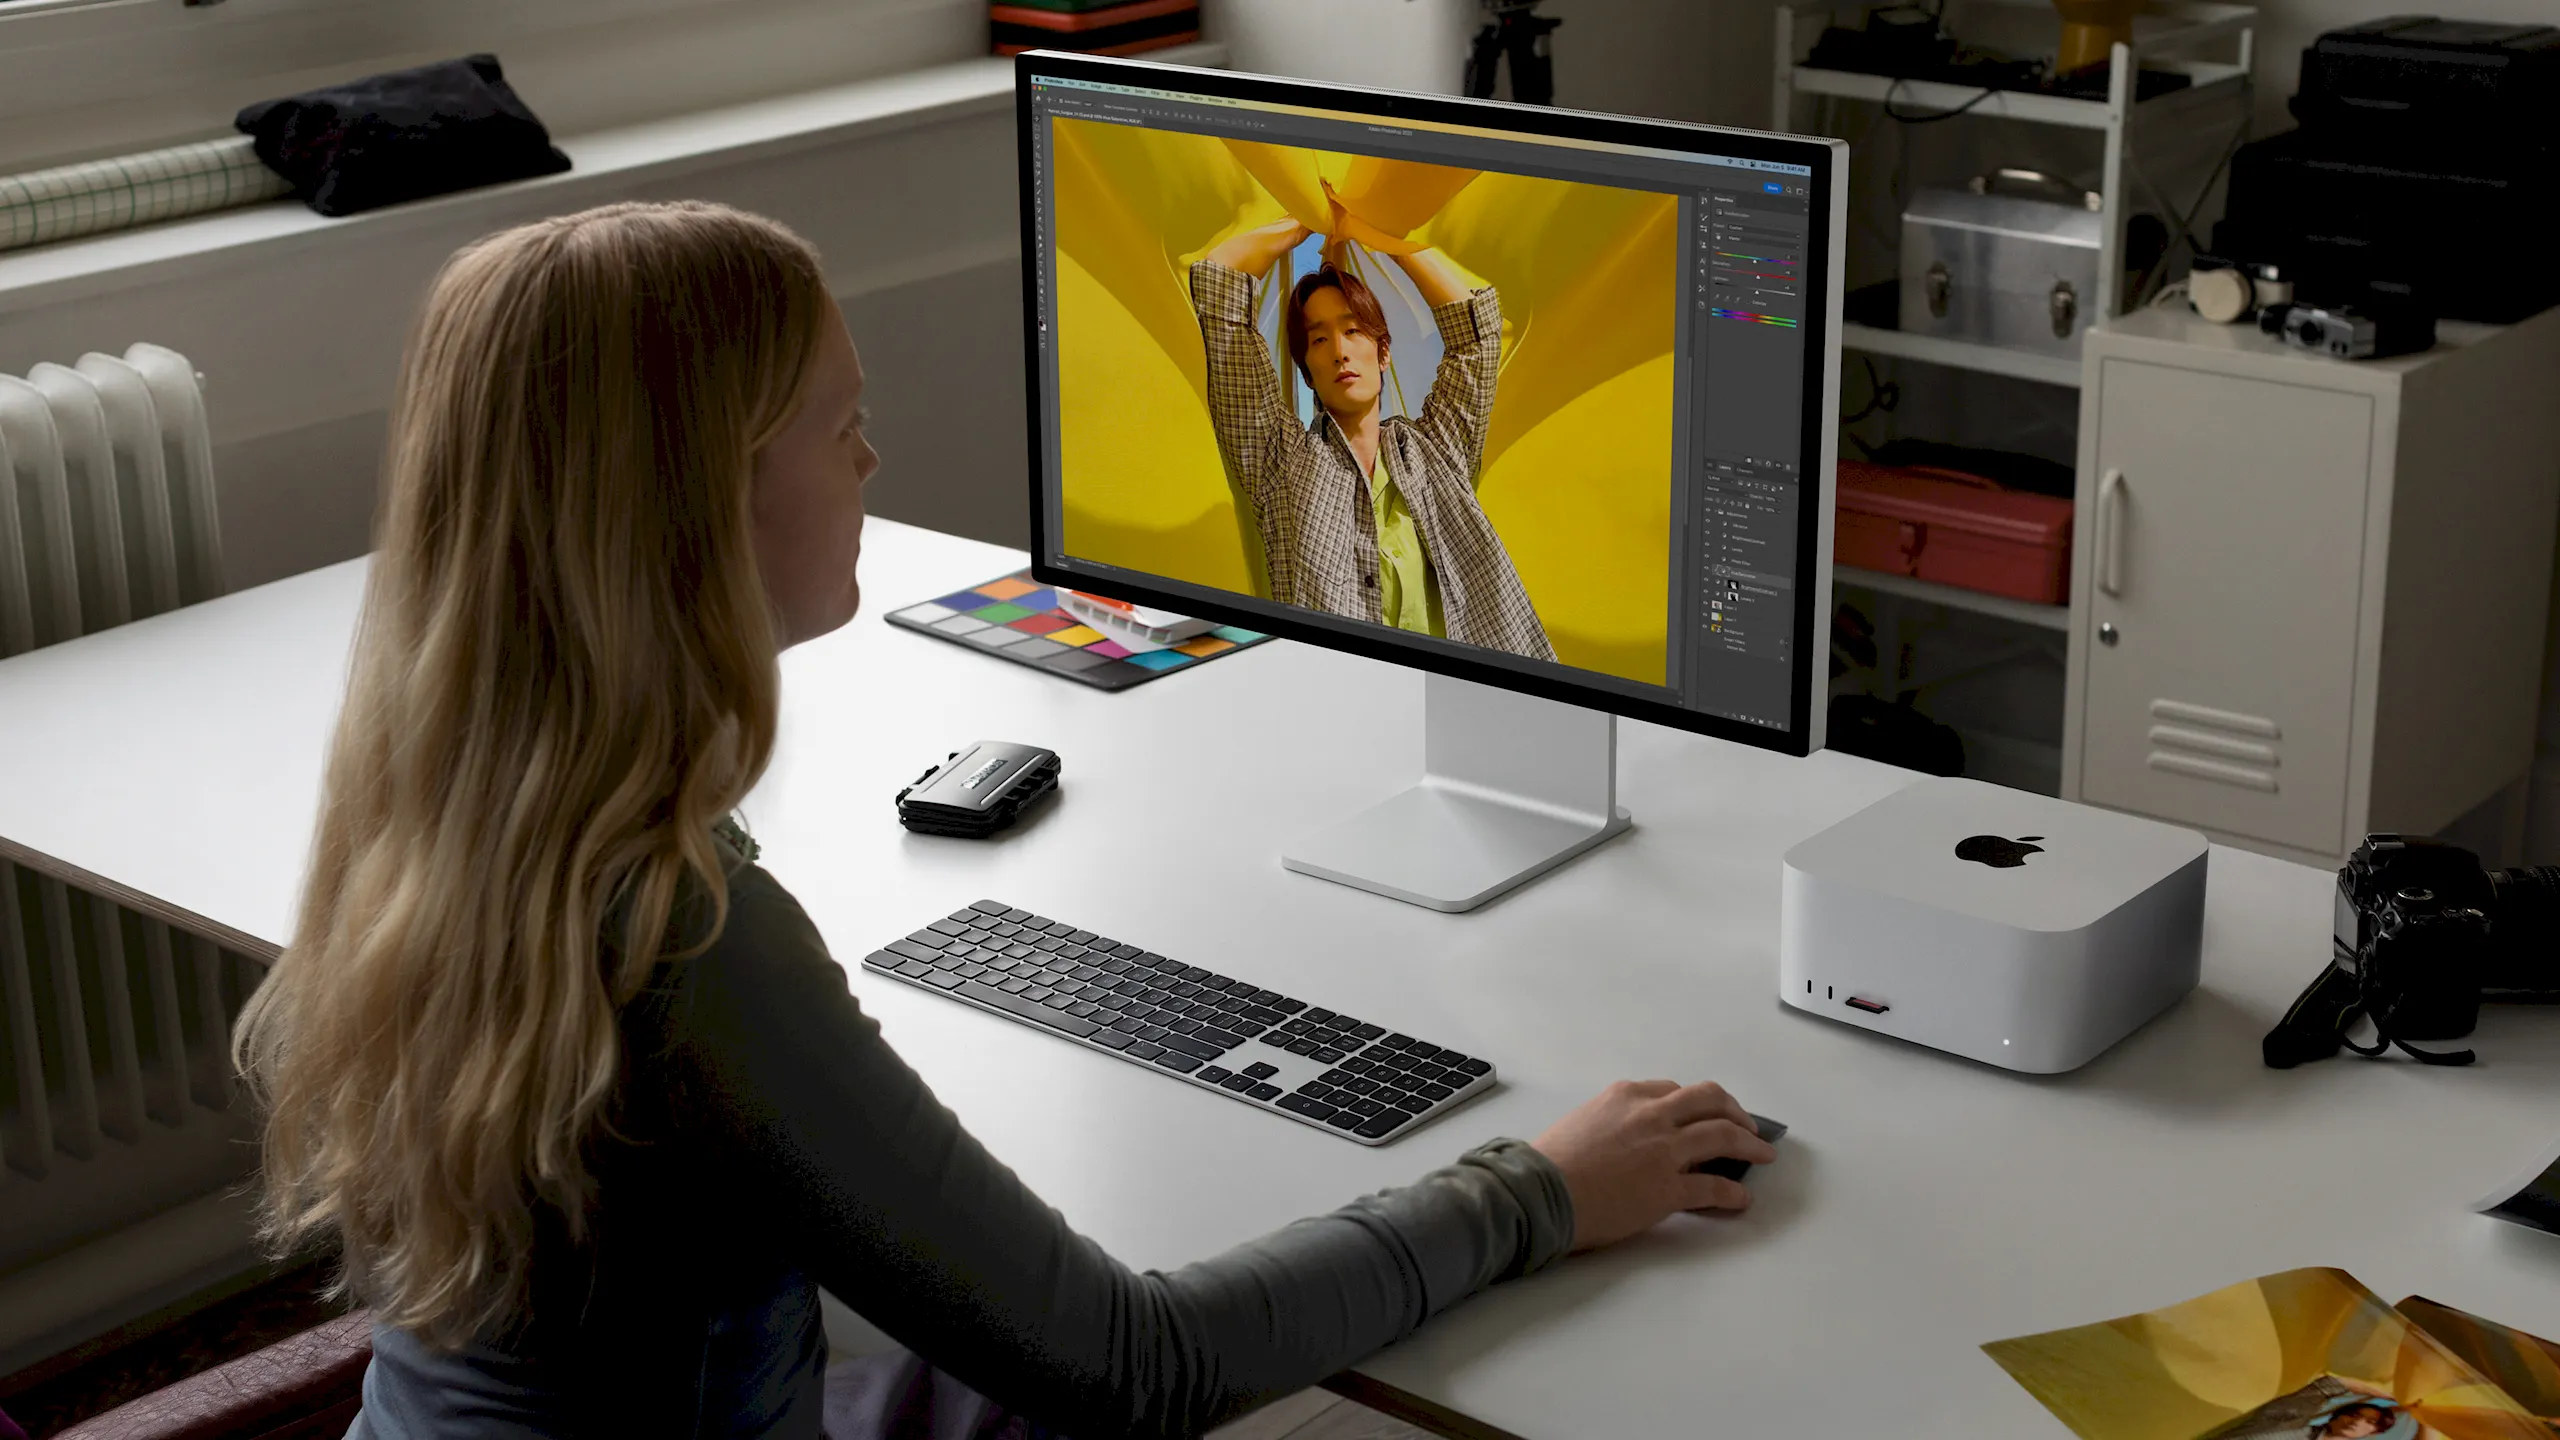 Mac Studio được nâng cấp với tuỳ chọn cấu hình M2 Ultra và M2 Max